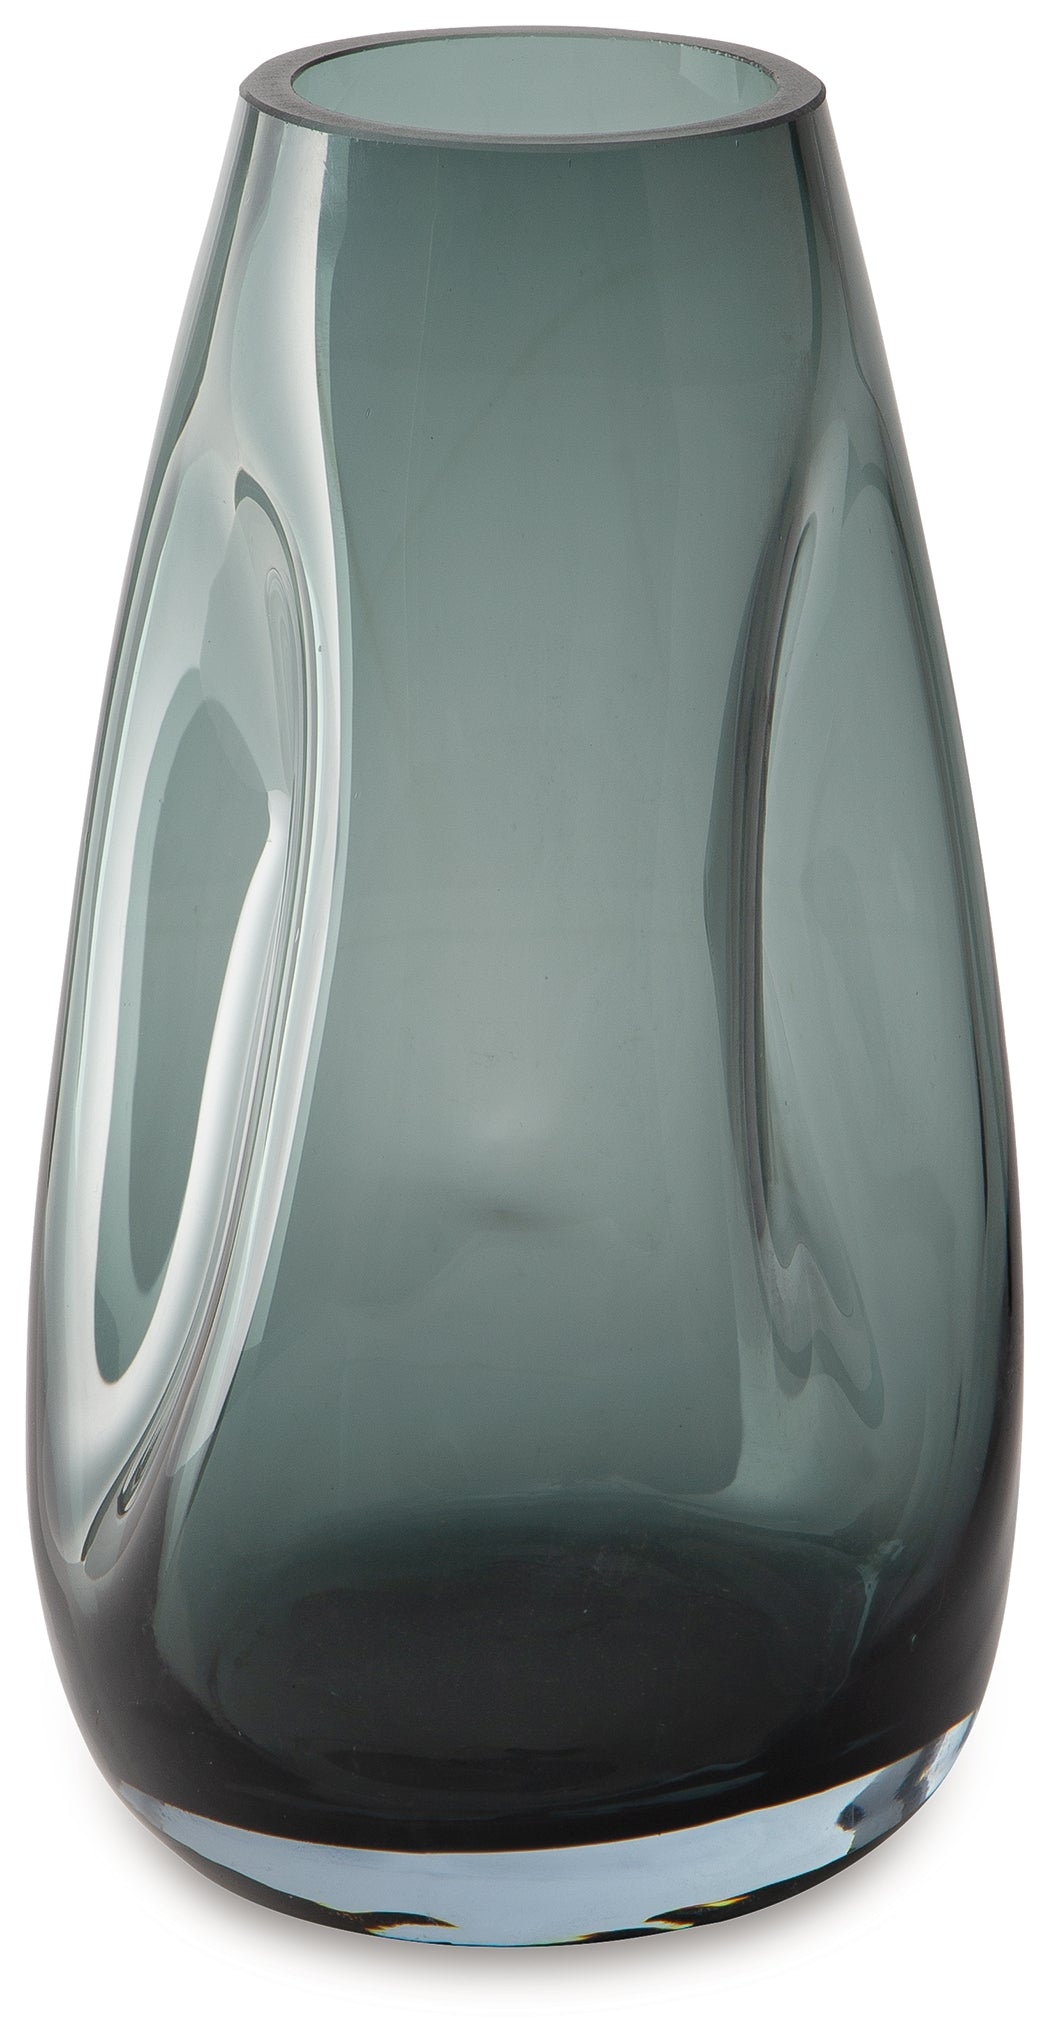 Beamund Teal Blue Vase (Set of 2) - A2900010 - Luna Furniture